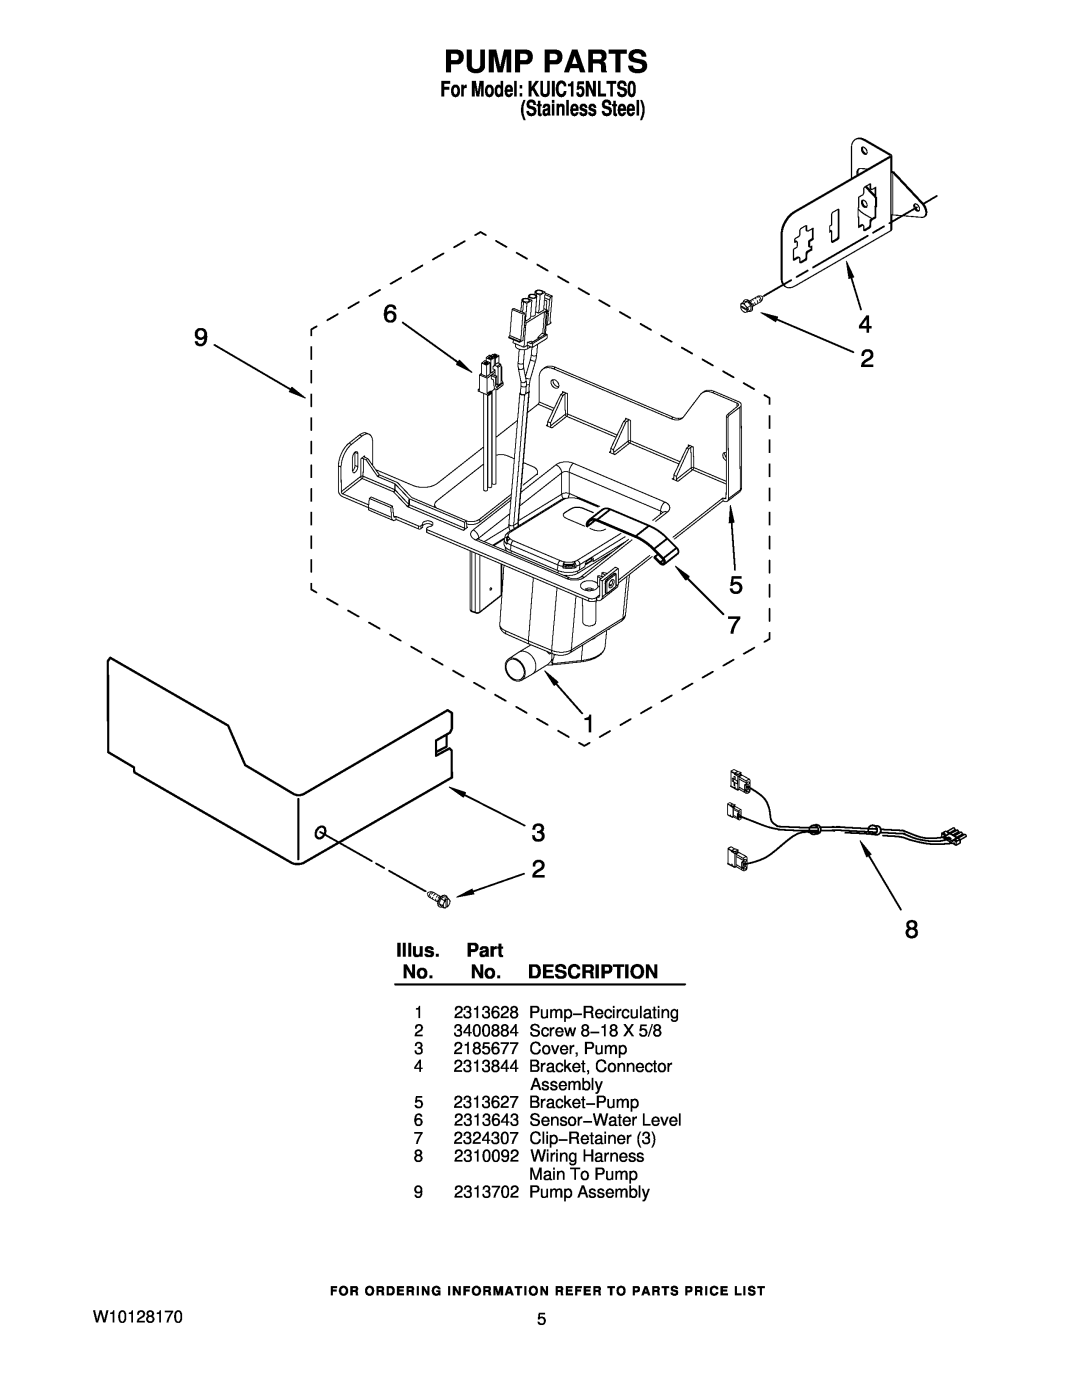 KitchenAid manual Pump Parts, Illus. Part No. No. DESCRIPTION, For Model KUIC15NLTS0 Stainless Steel 